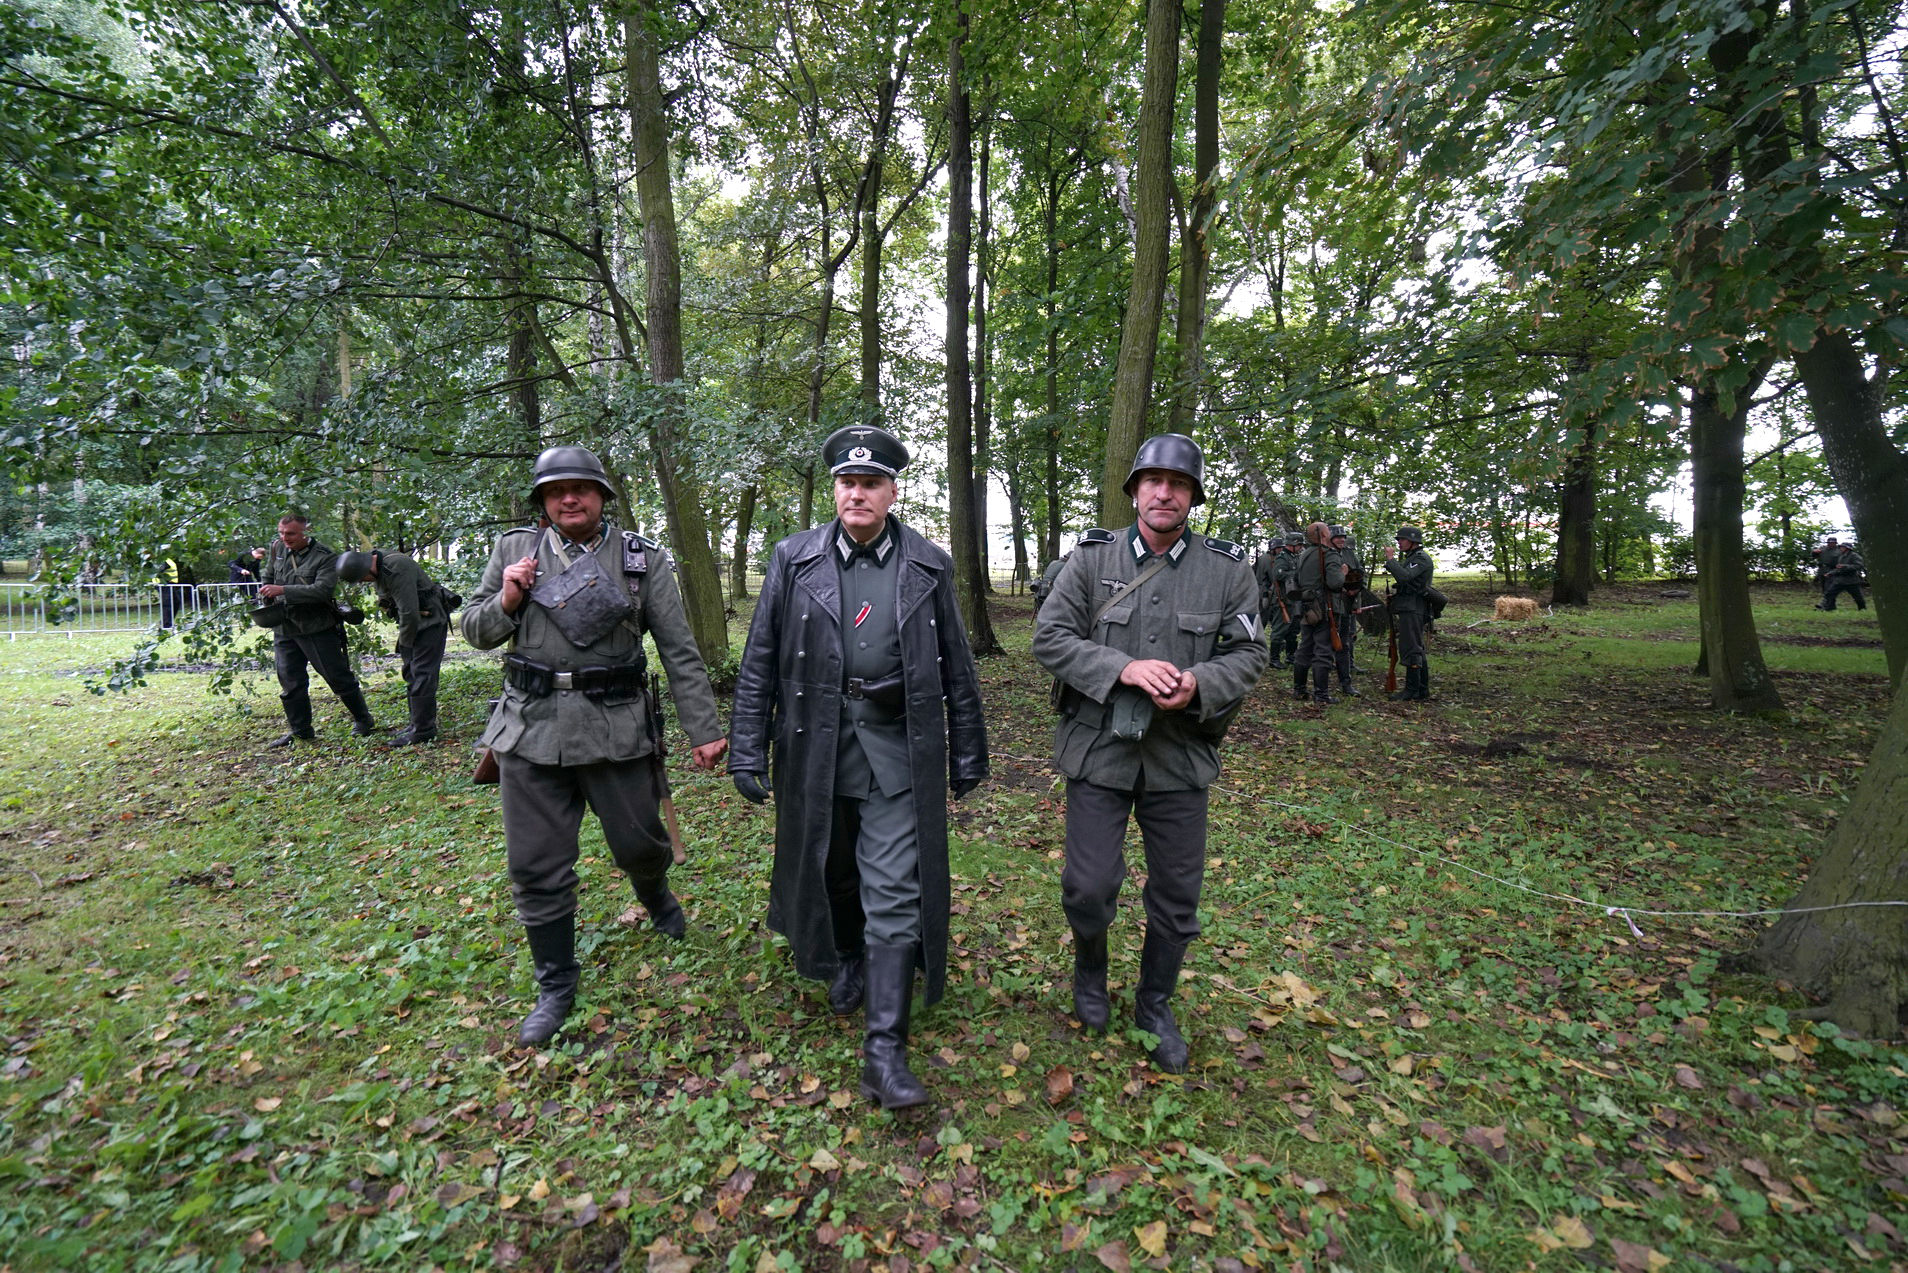 Inscenizacja historyczna. Trzech mężczyzn w mundurach niemieckich z okresu II Wojny Światowej. Przechodzą pomiędzy drzewami. 